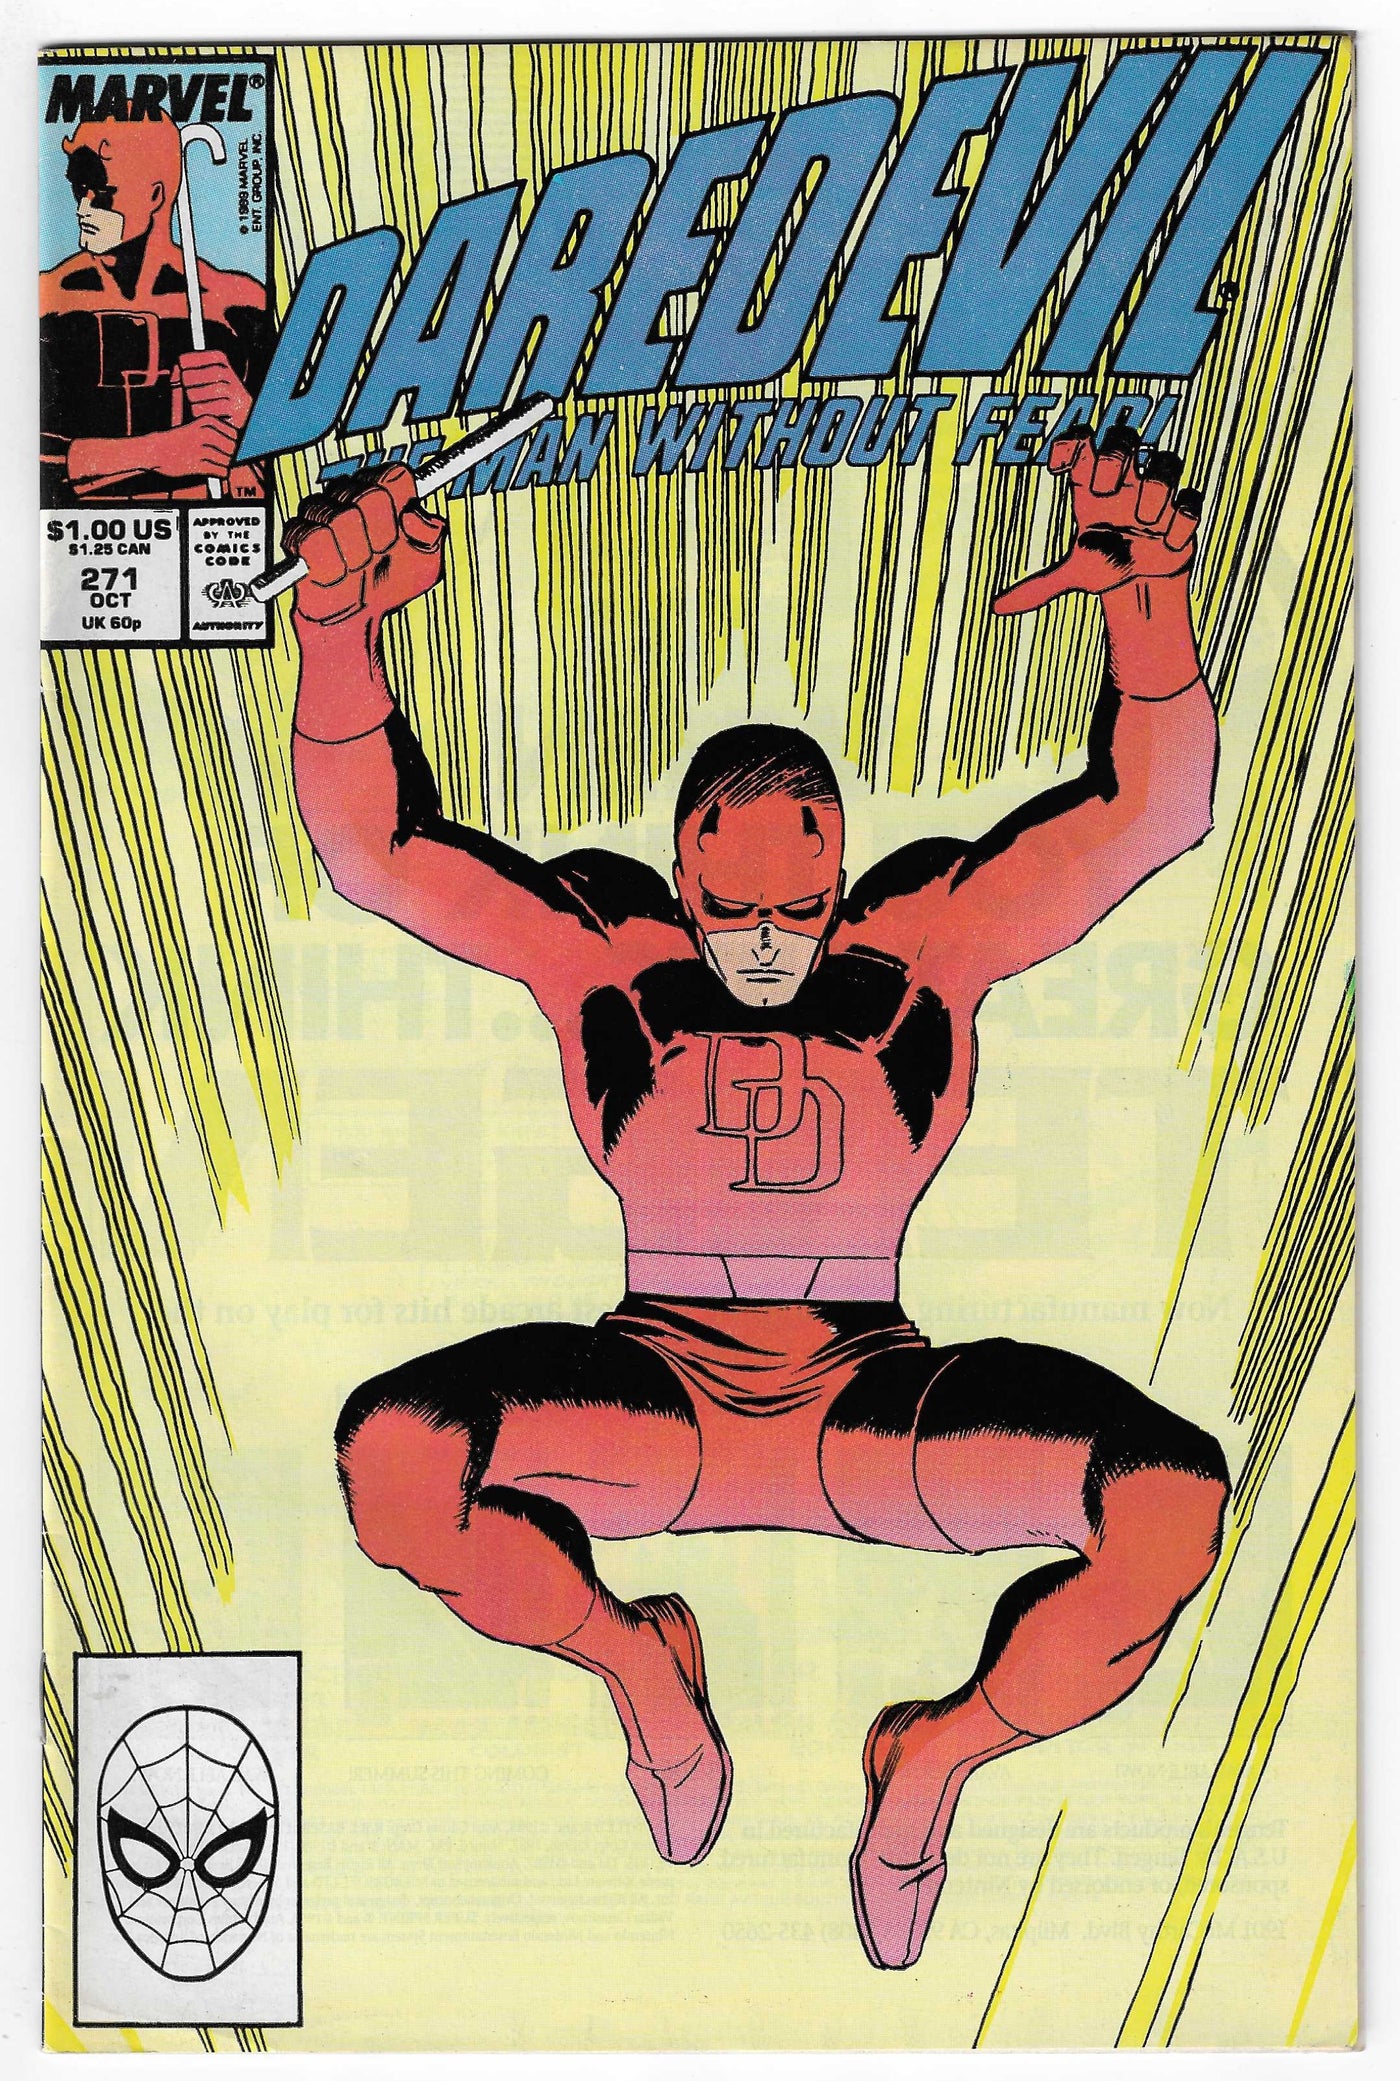 Daredevil (Volume 1) #271